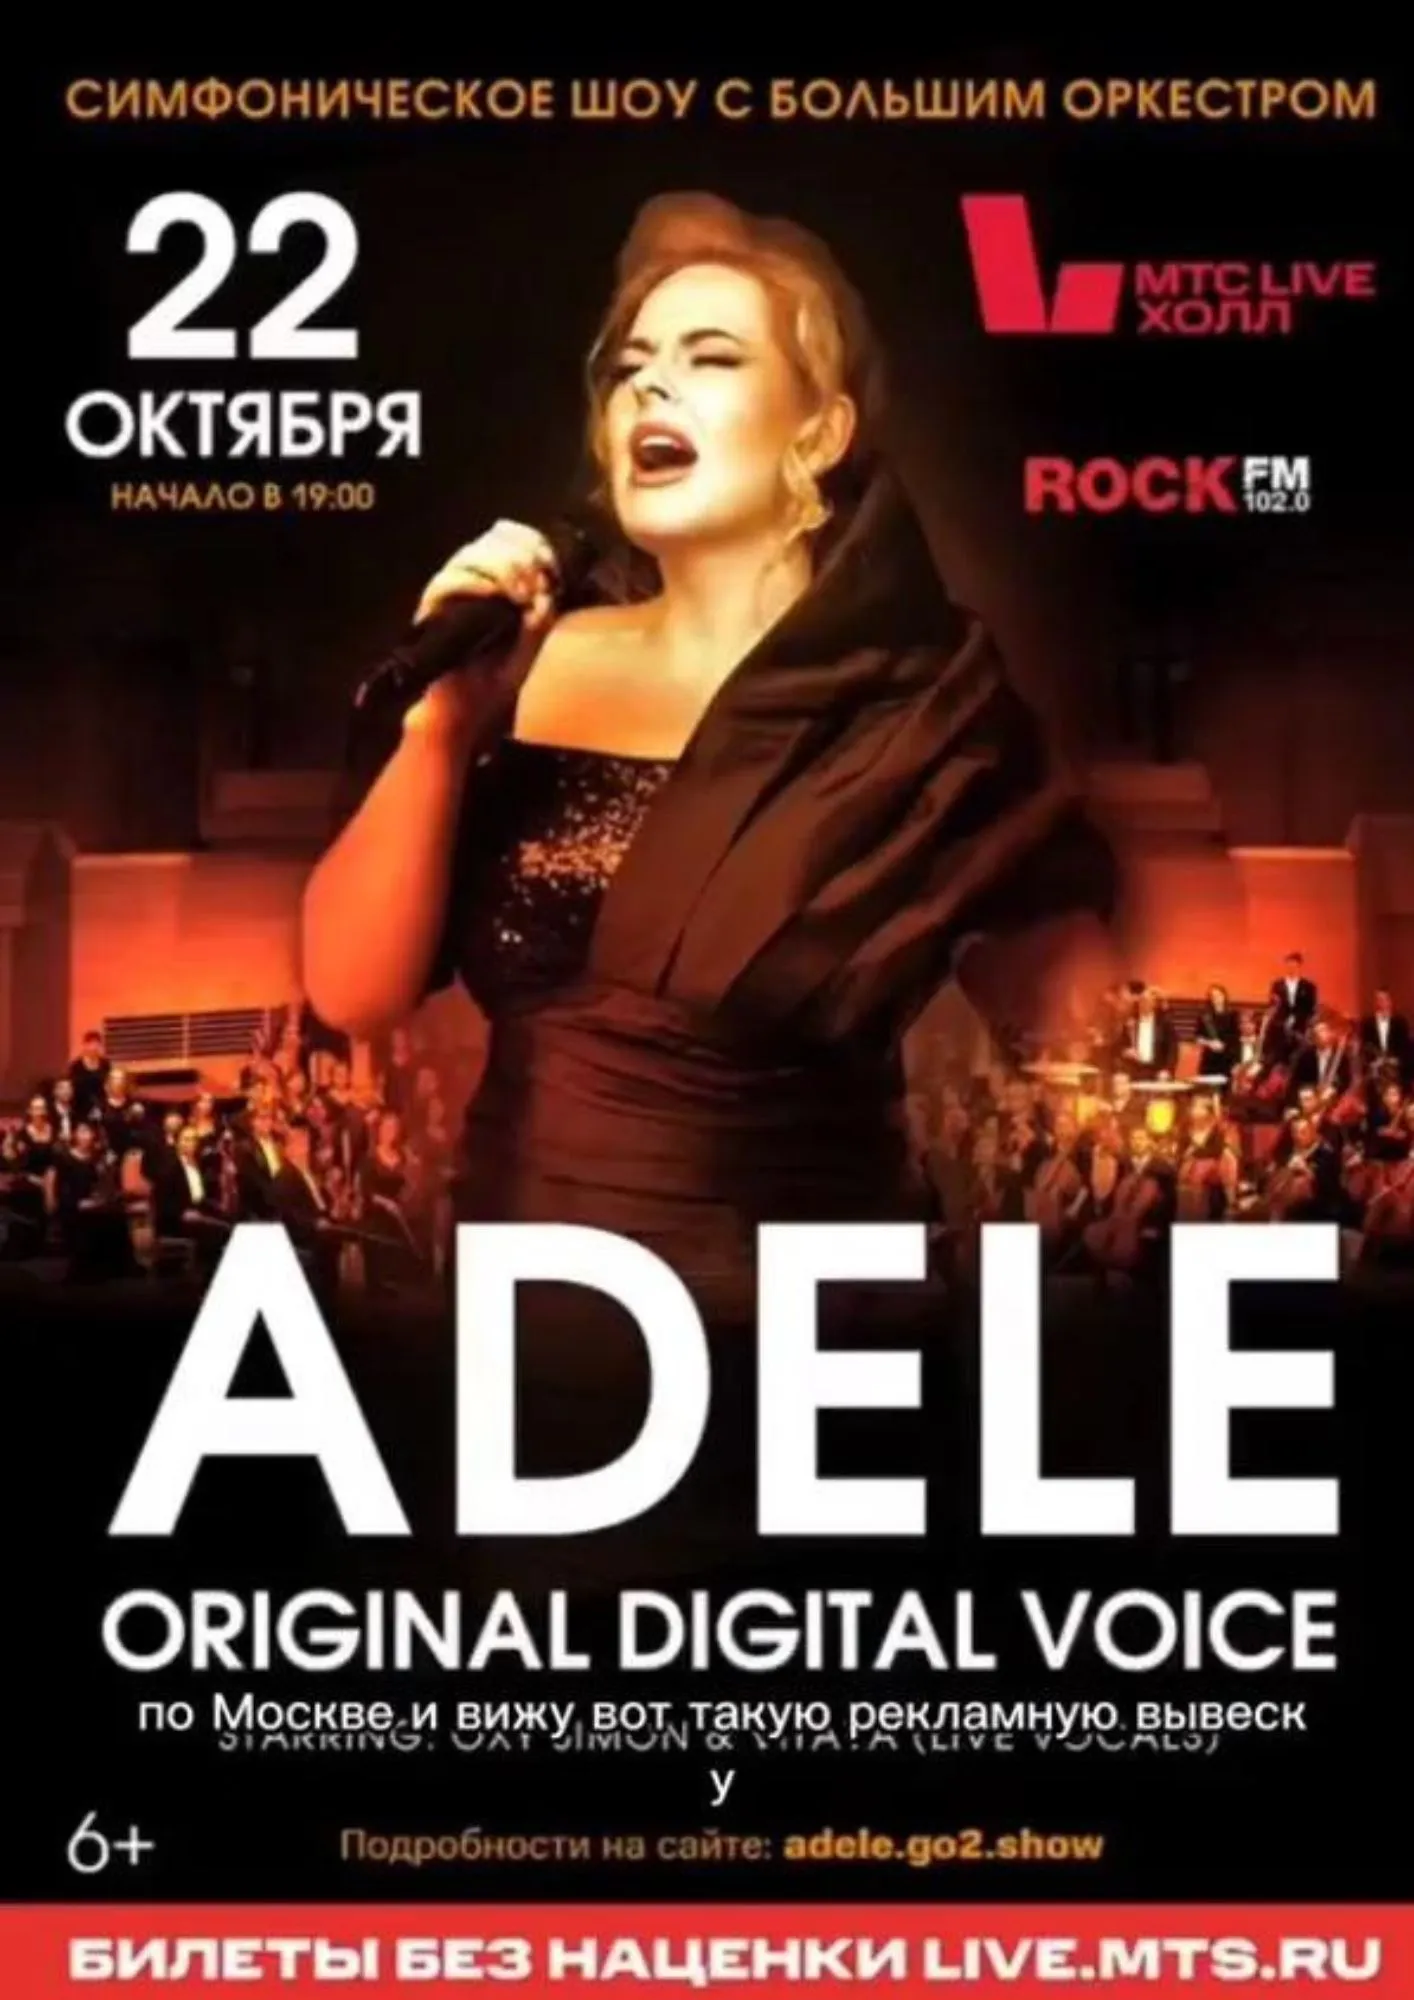 Афиша для концерта Адель в России